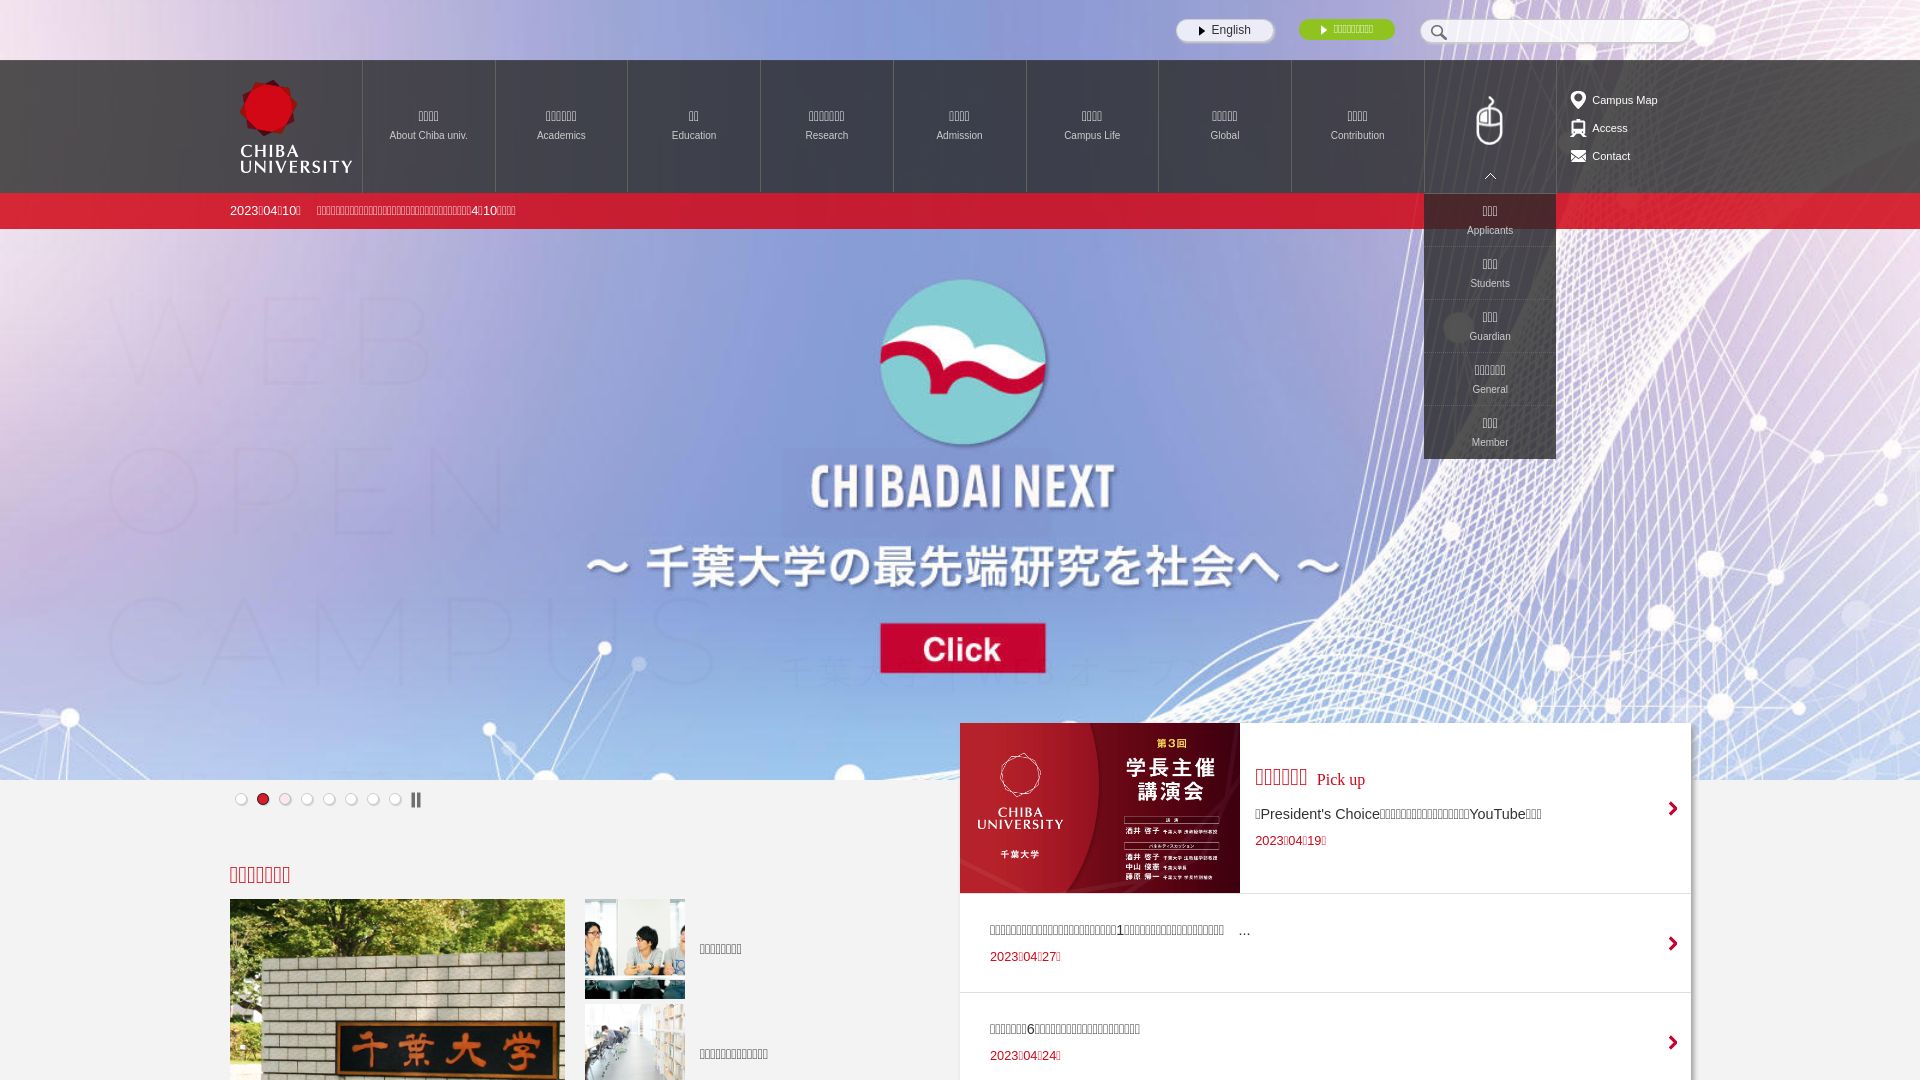 Stato del sito web chiba-u.ac.jp è   ONLINE